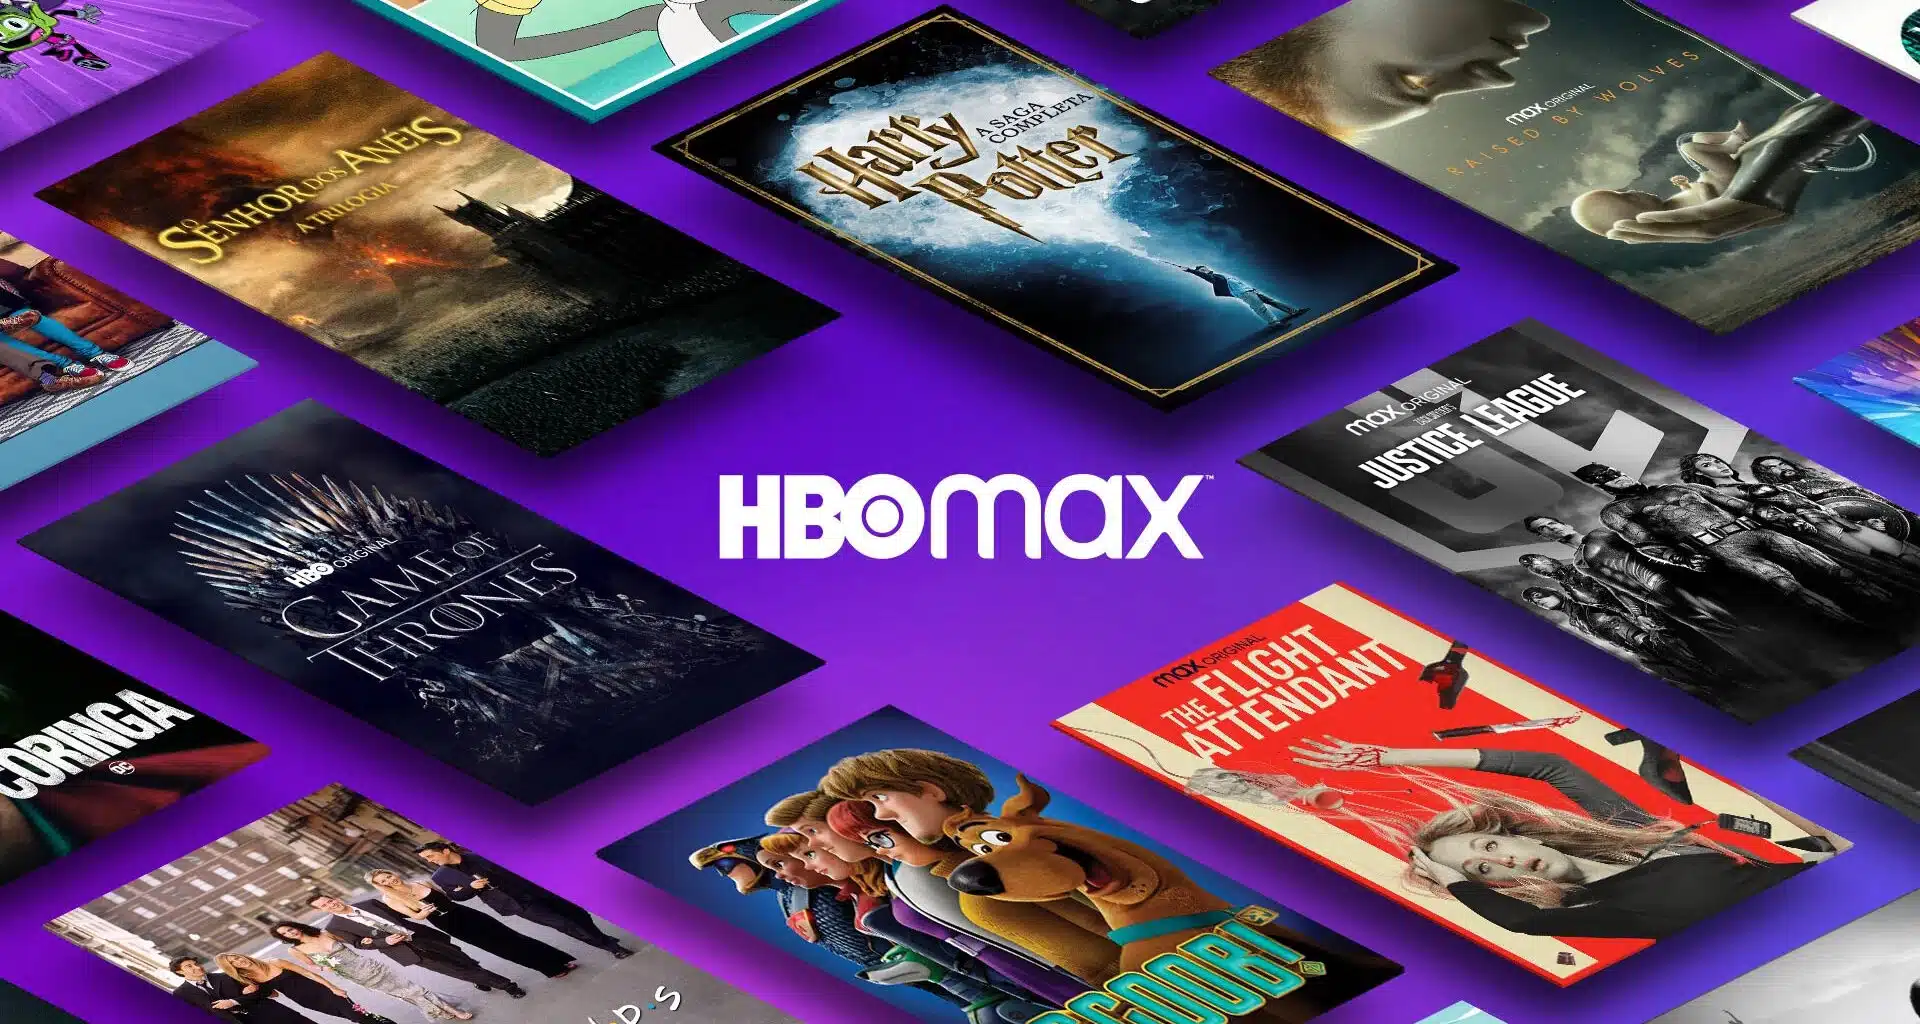 7 mejores series de suspense e intriga de HBO Max